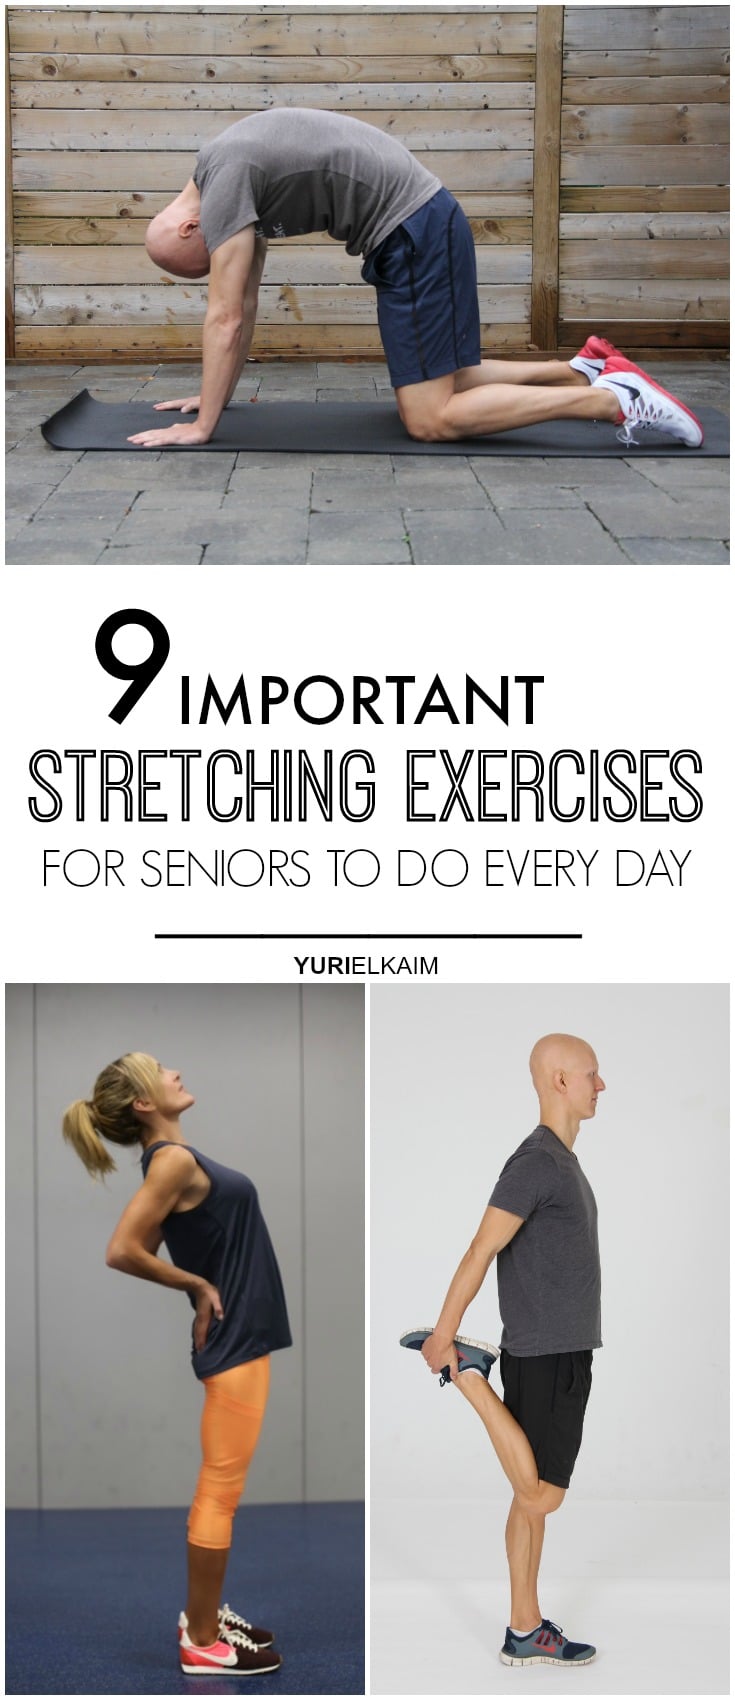 exercises-for-seniors-morning-stretching-exercises-for-seniors